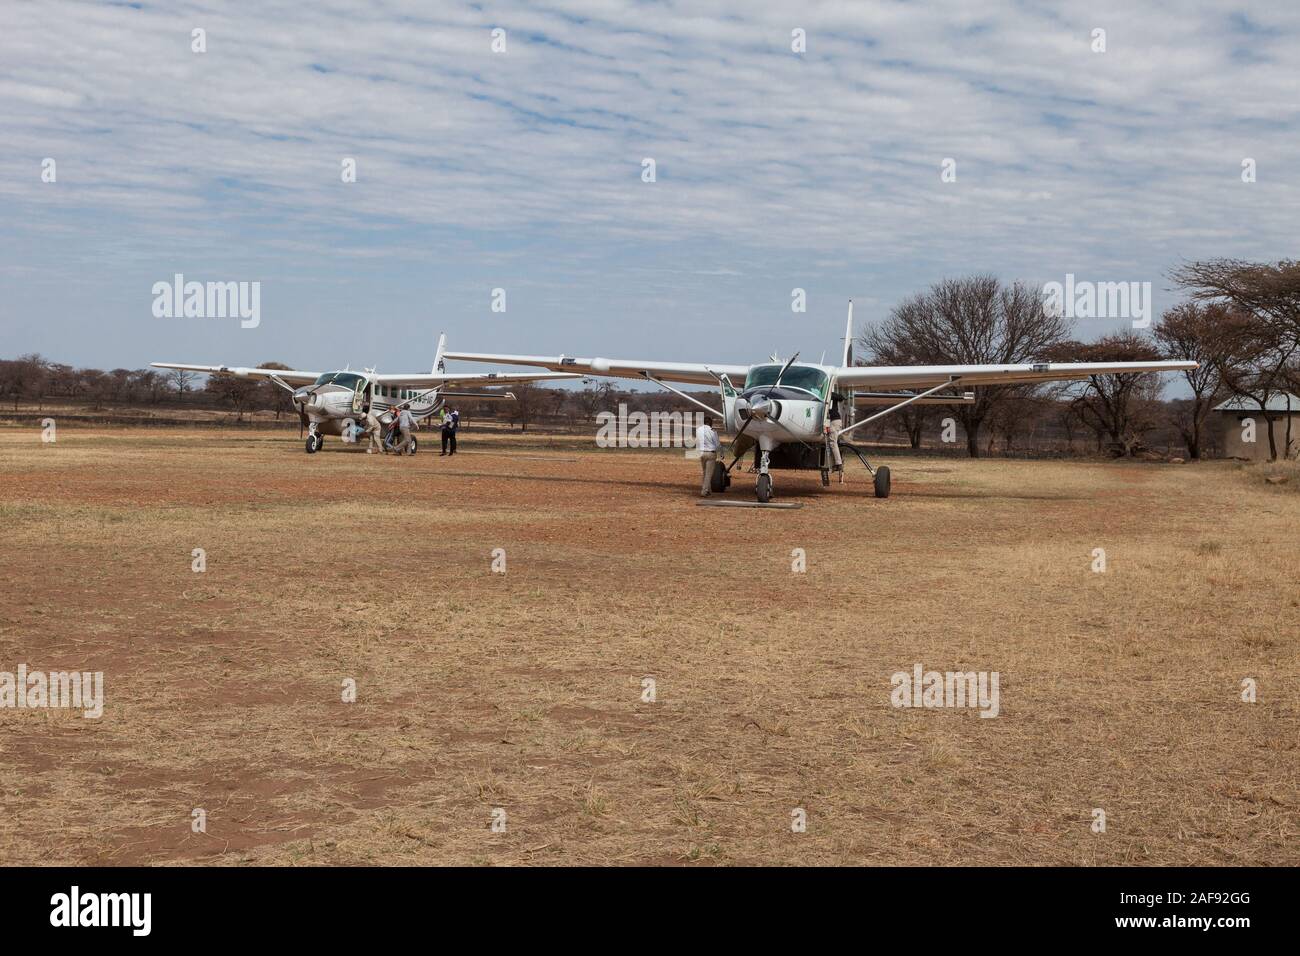 Tanzania. Aeromobili a lobo pista di atterraggio per aerei, Serengeti National Park. Foto Stock